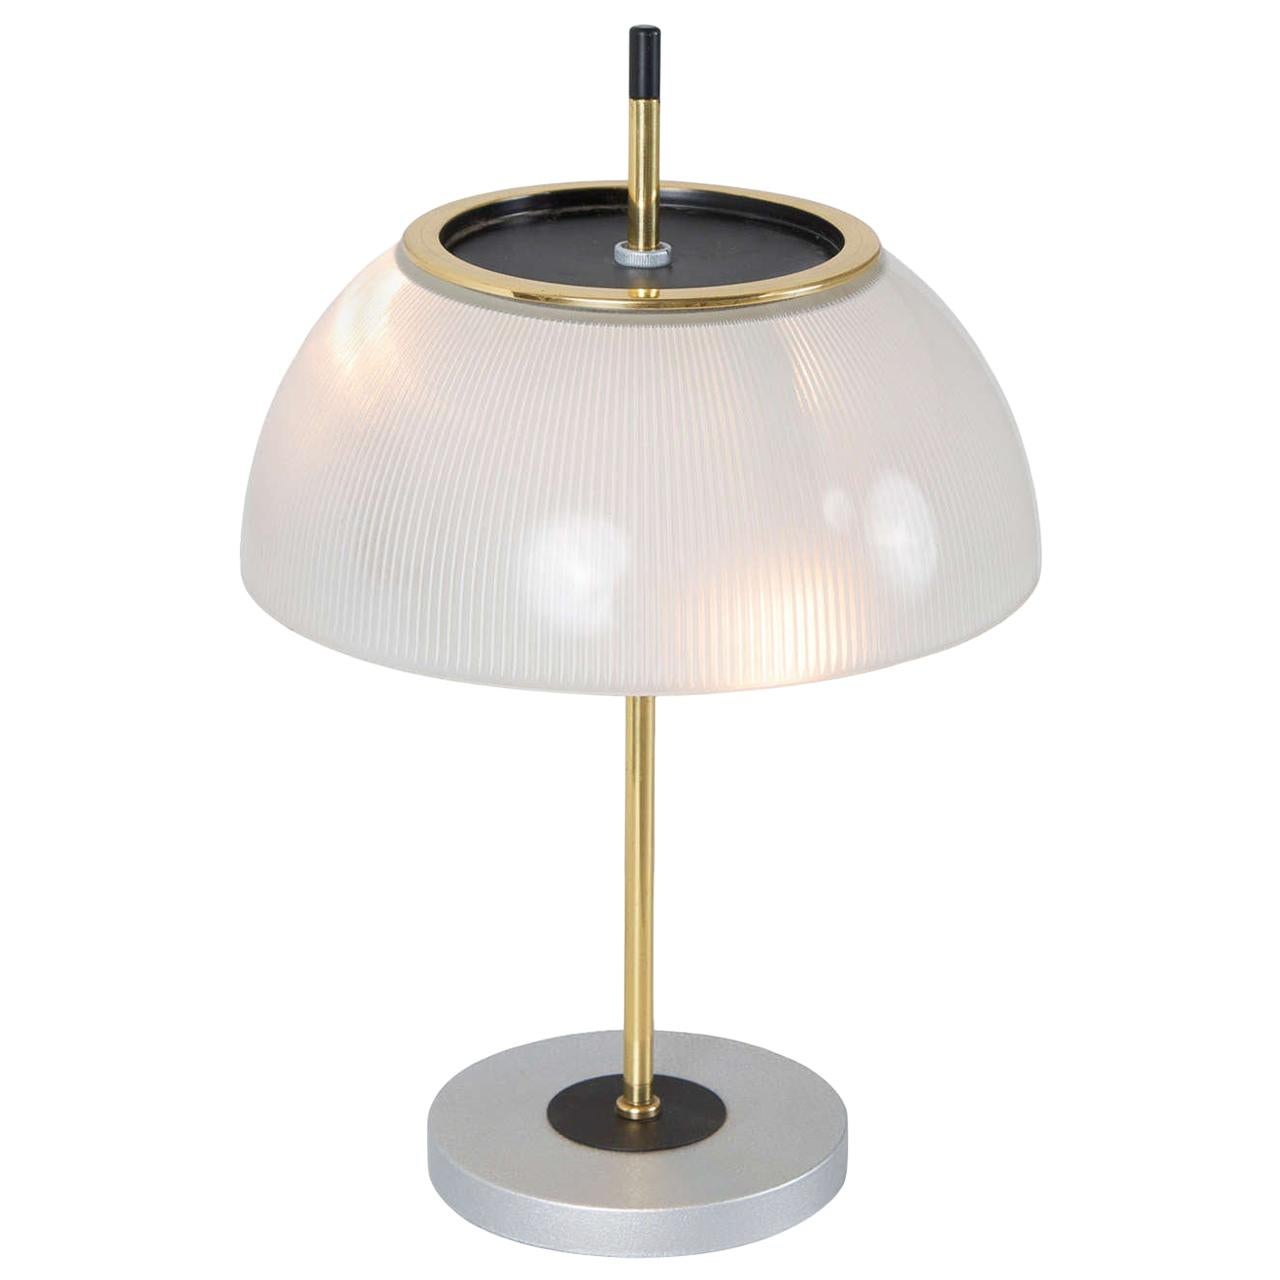 Adjustable Italian Table Lamp